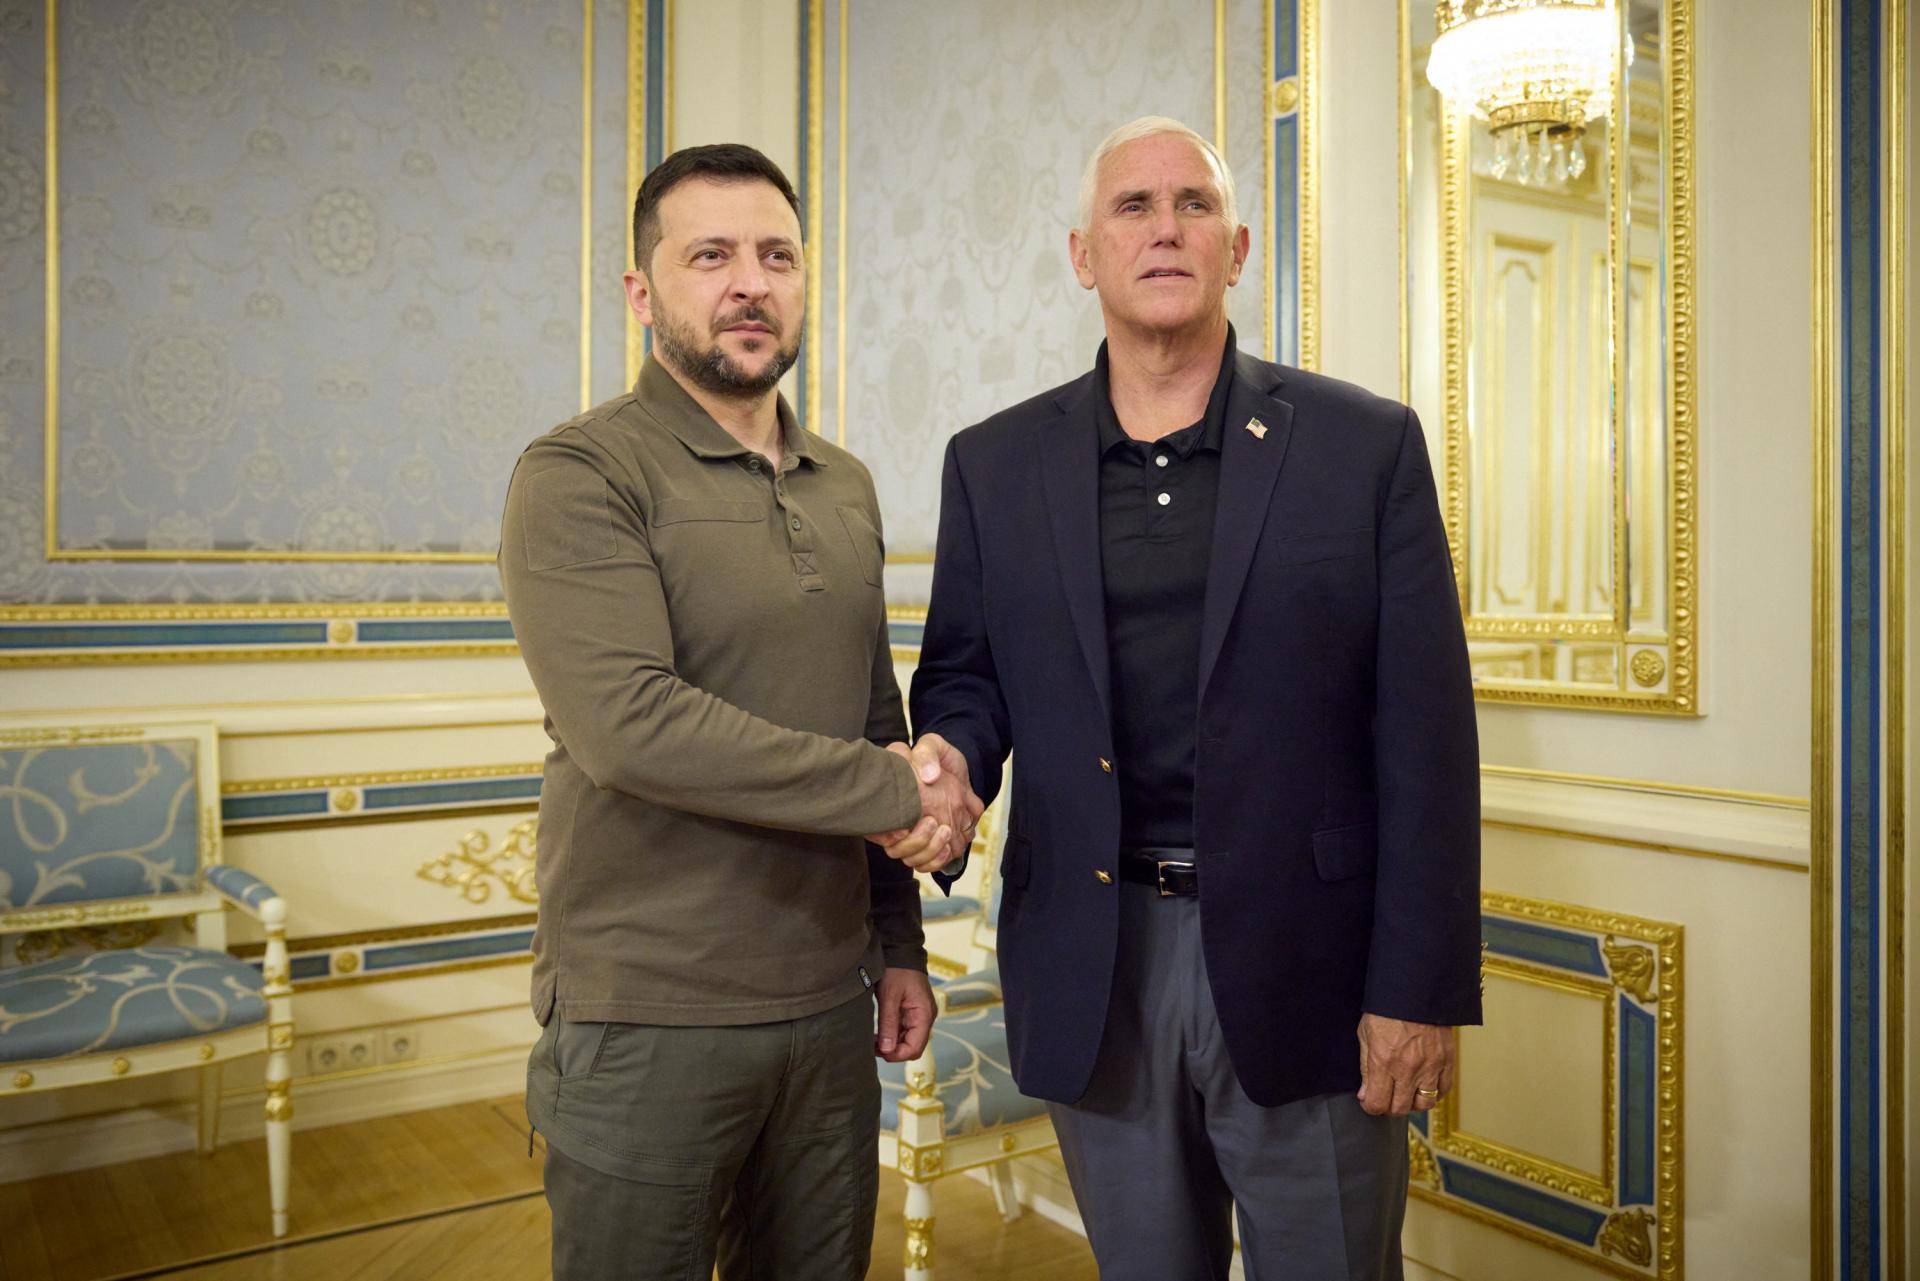 Bývalý americký viceprezident Pence prišiel na neohlásenú návštevu do Kyjeva, stretol sa s prezidentom